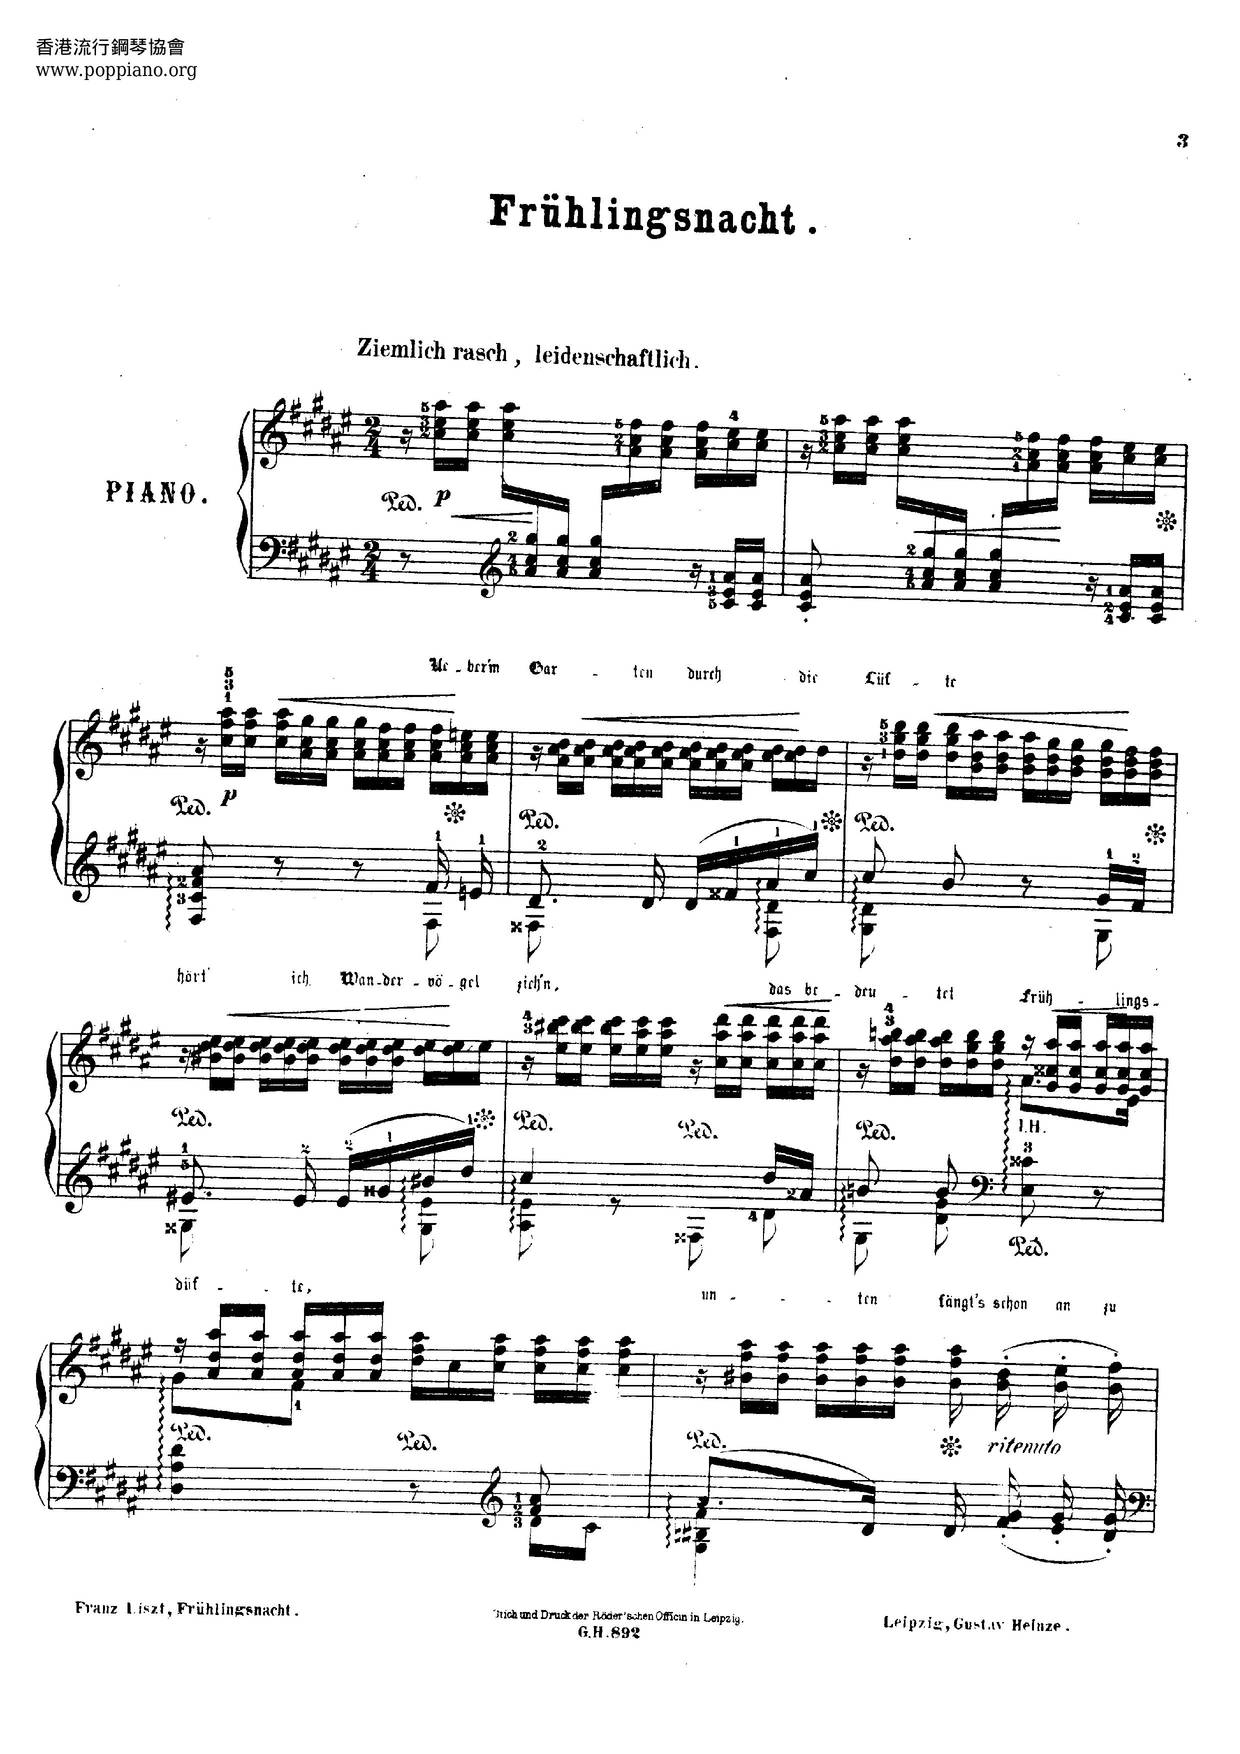 Frühlingsnacht, Lied Von Schumann, S.568 Score